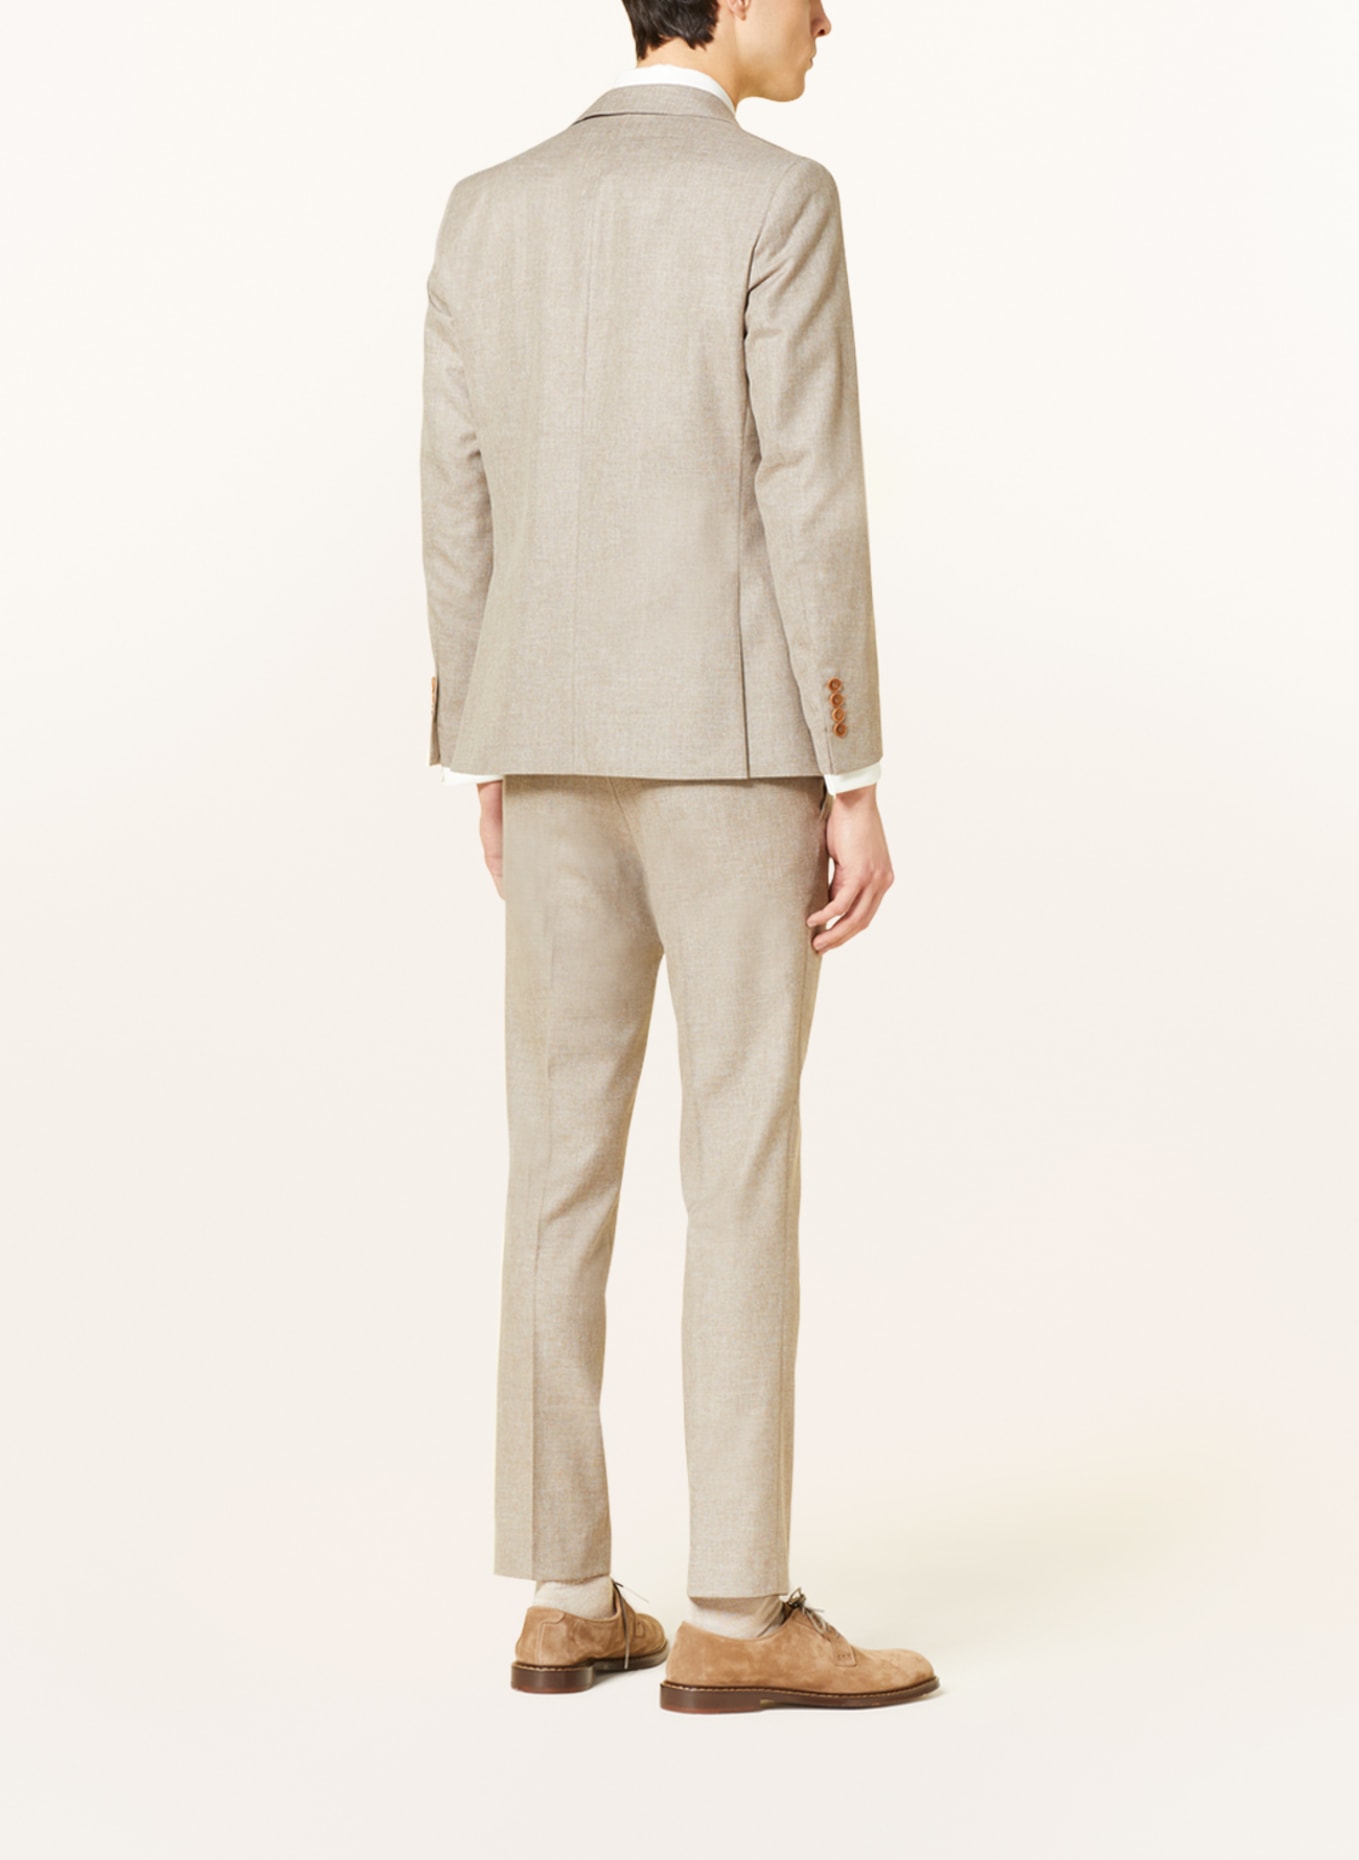 WILVORST Suit jacket extra slim fit, Color: BEIGE (Image 4)